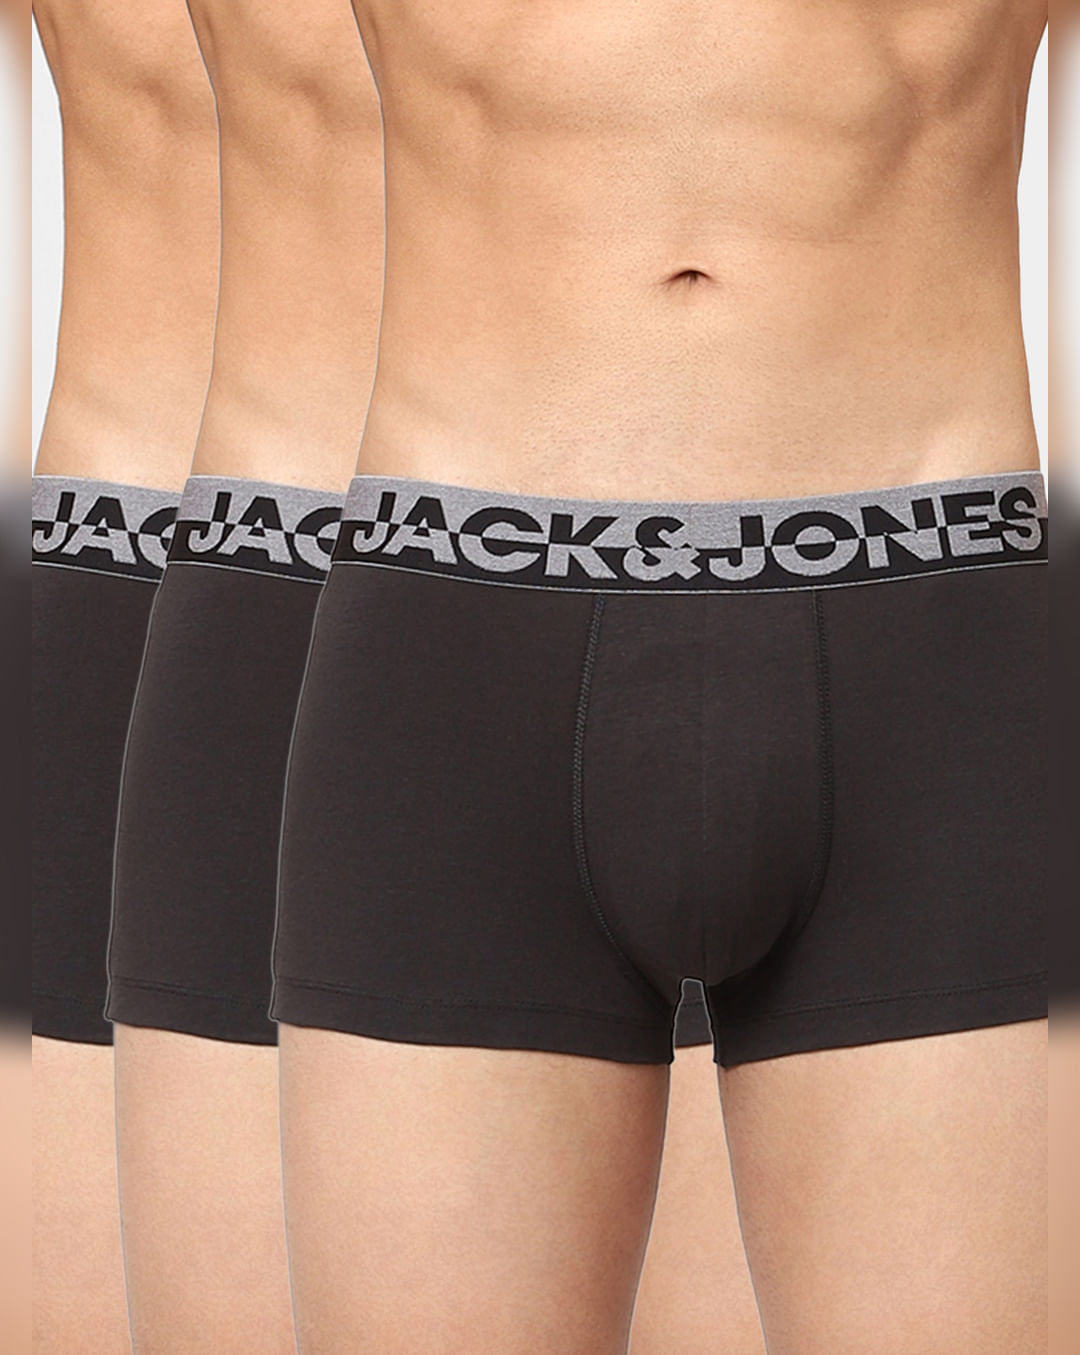 Jack and Jones de los hombres Sense Trunks 3-Pack Boxers